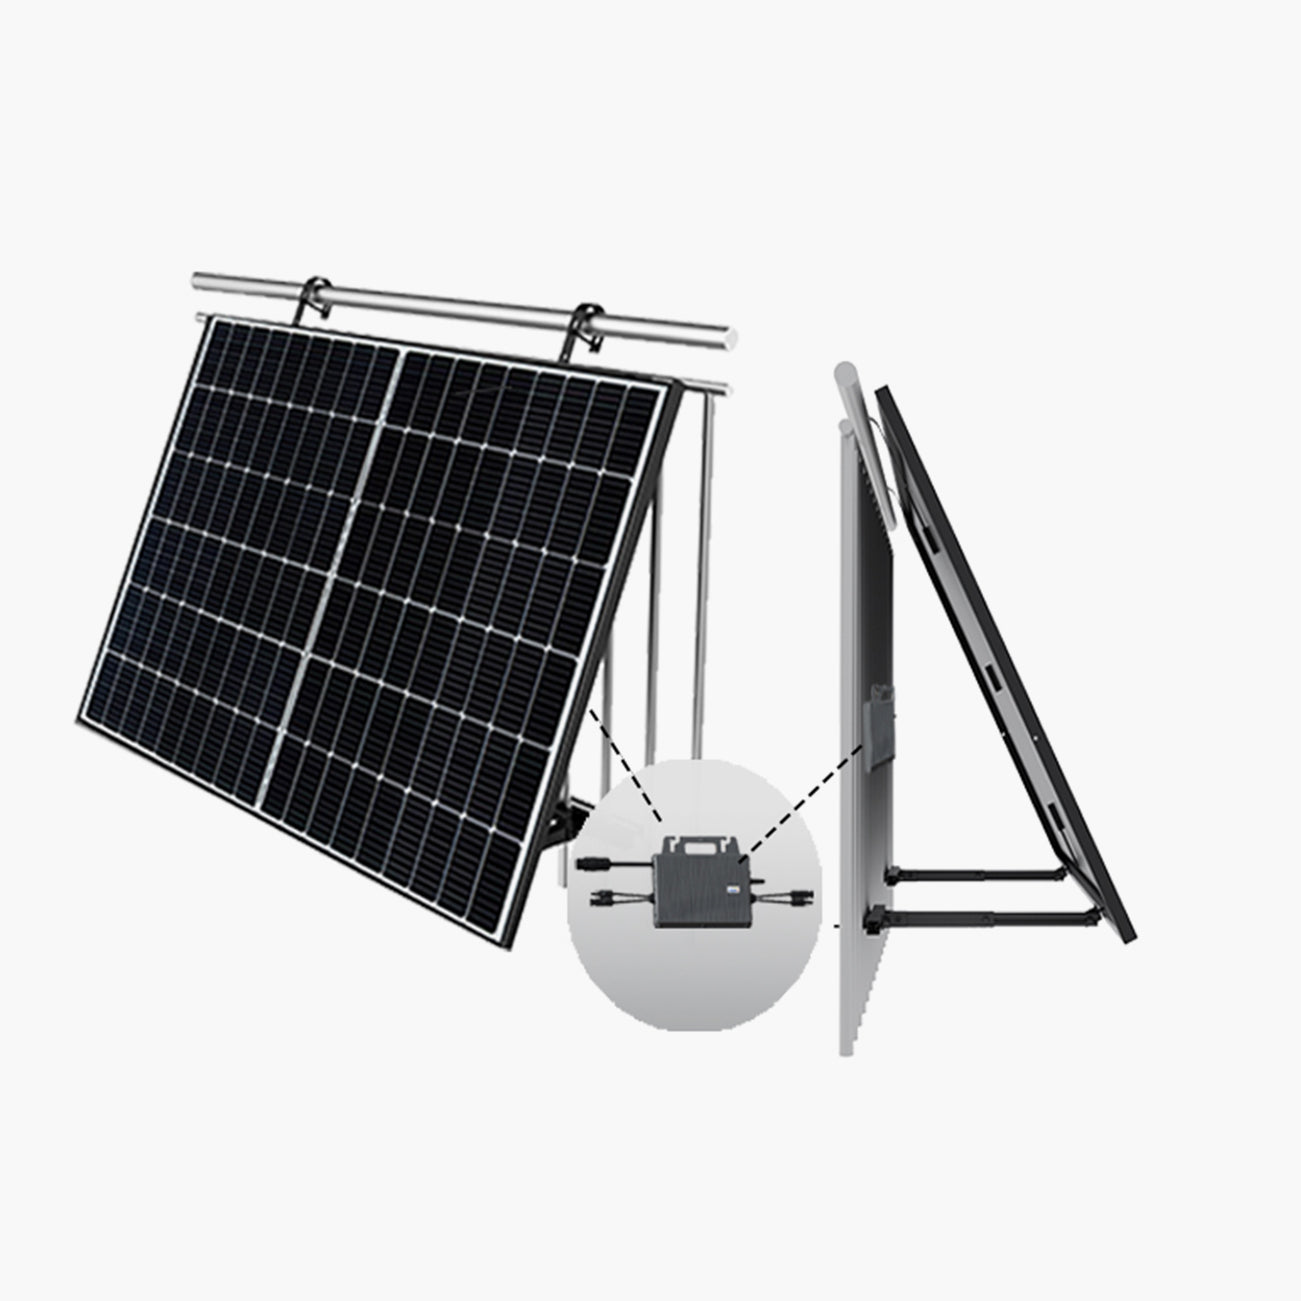 2 Painéis Solares de Varanda (2x425W) com Inversor 800W e Suportes de Fixação